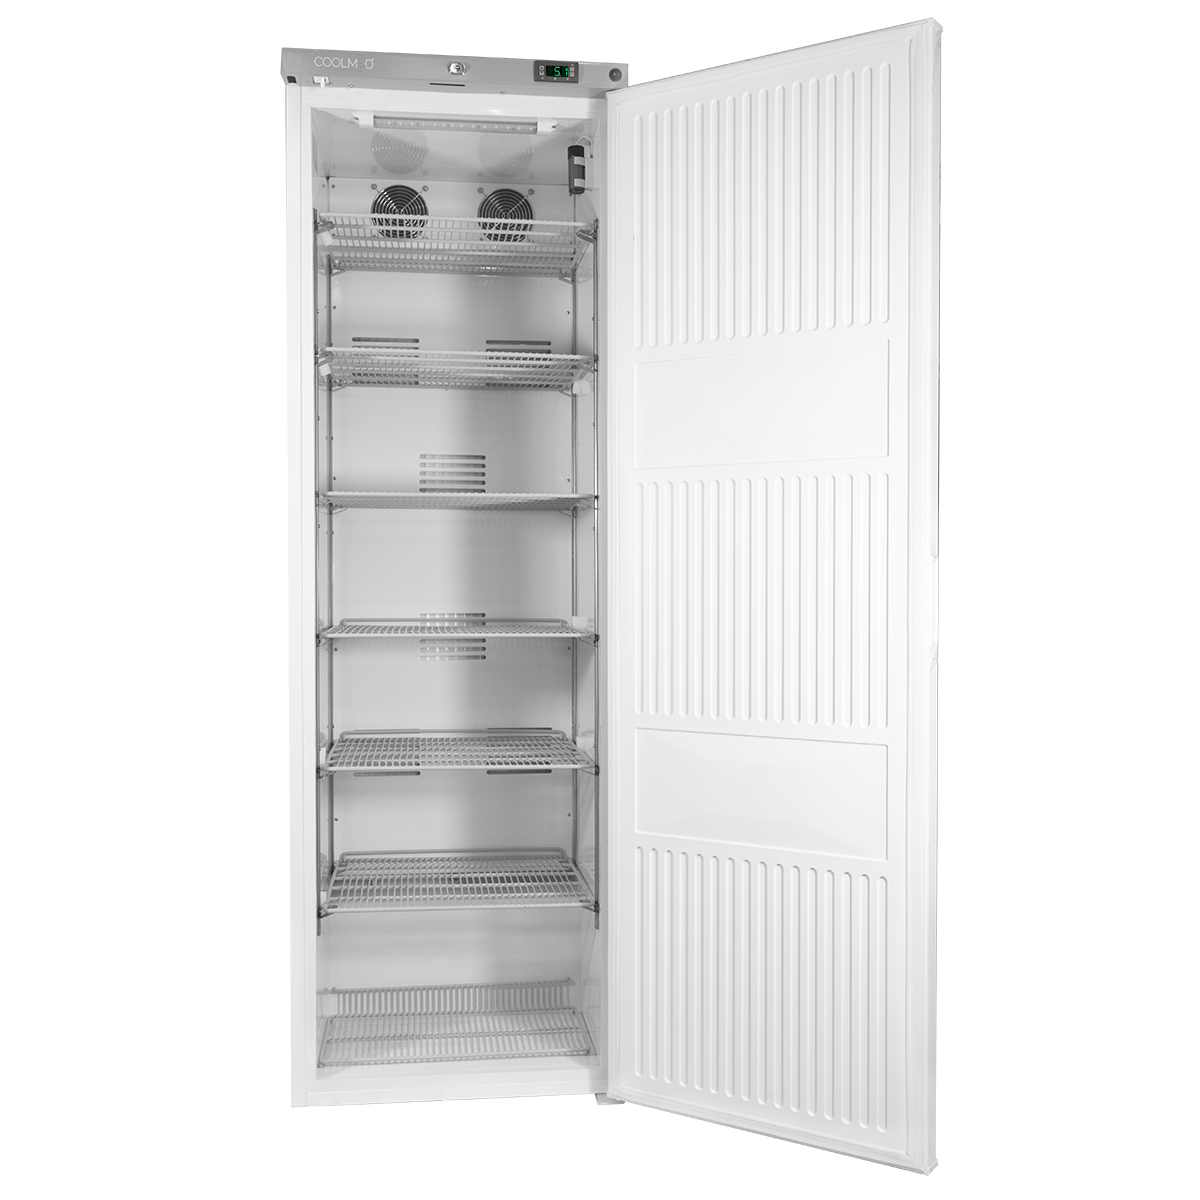 CMRTSS400 Solid Door Room Temperature Storage Cabinet 400L